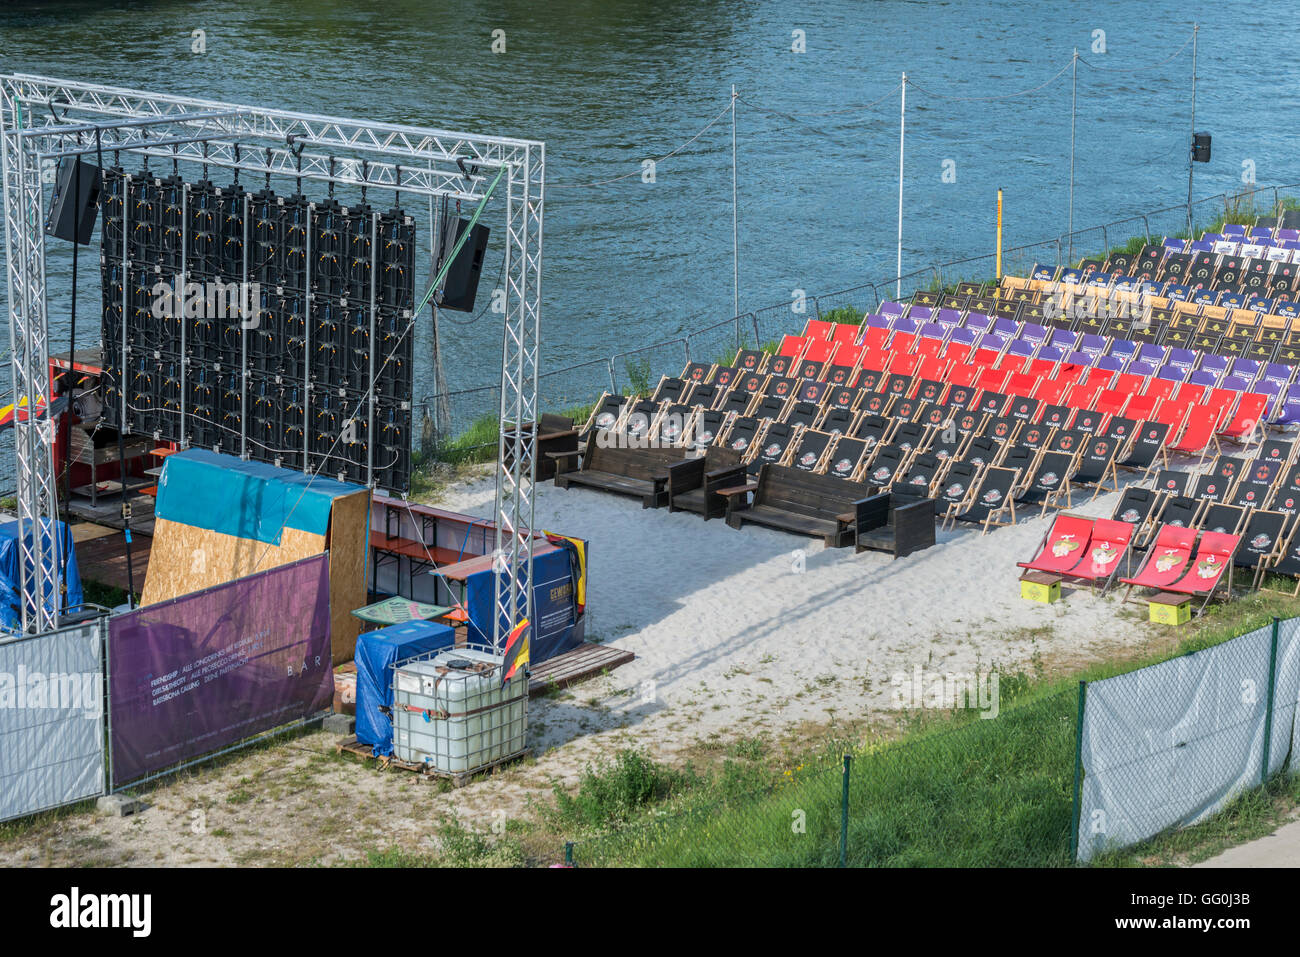 Regensburg, Bavière, Allemagne - 10 juillet 2016 : La photo montre la zone d'affichage public allemand à Regensburg, Allemagne. La photo w Banque D'Images